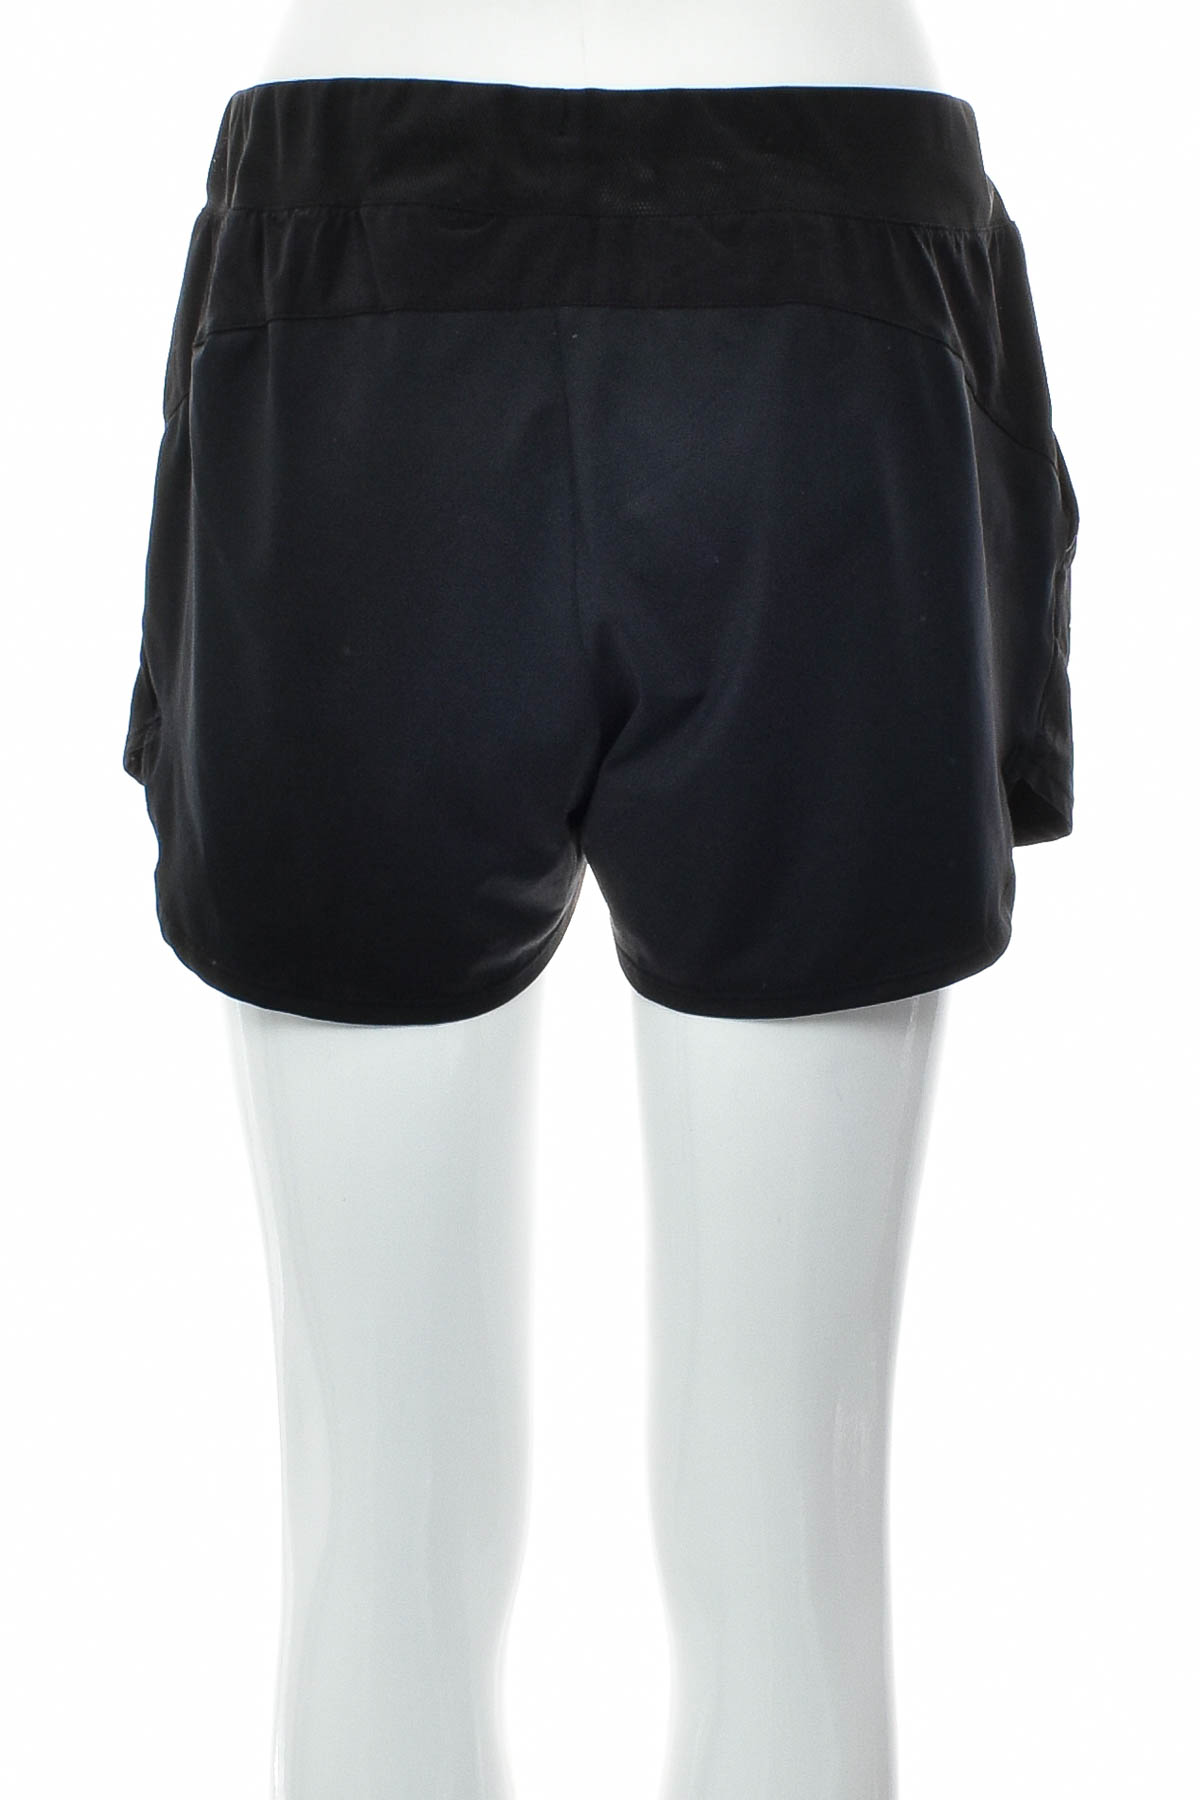 Women's shorts - Artengo - 1